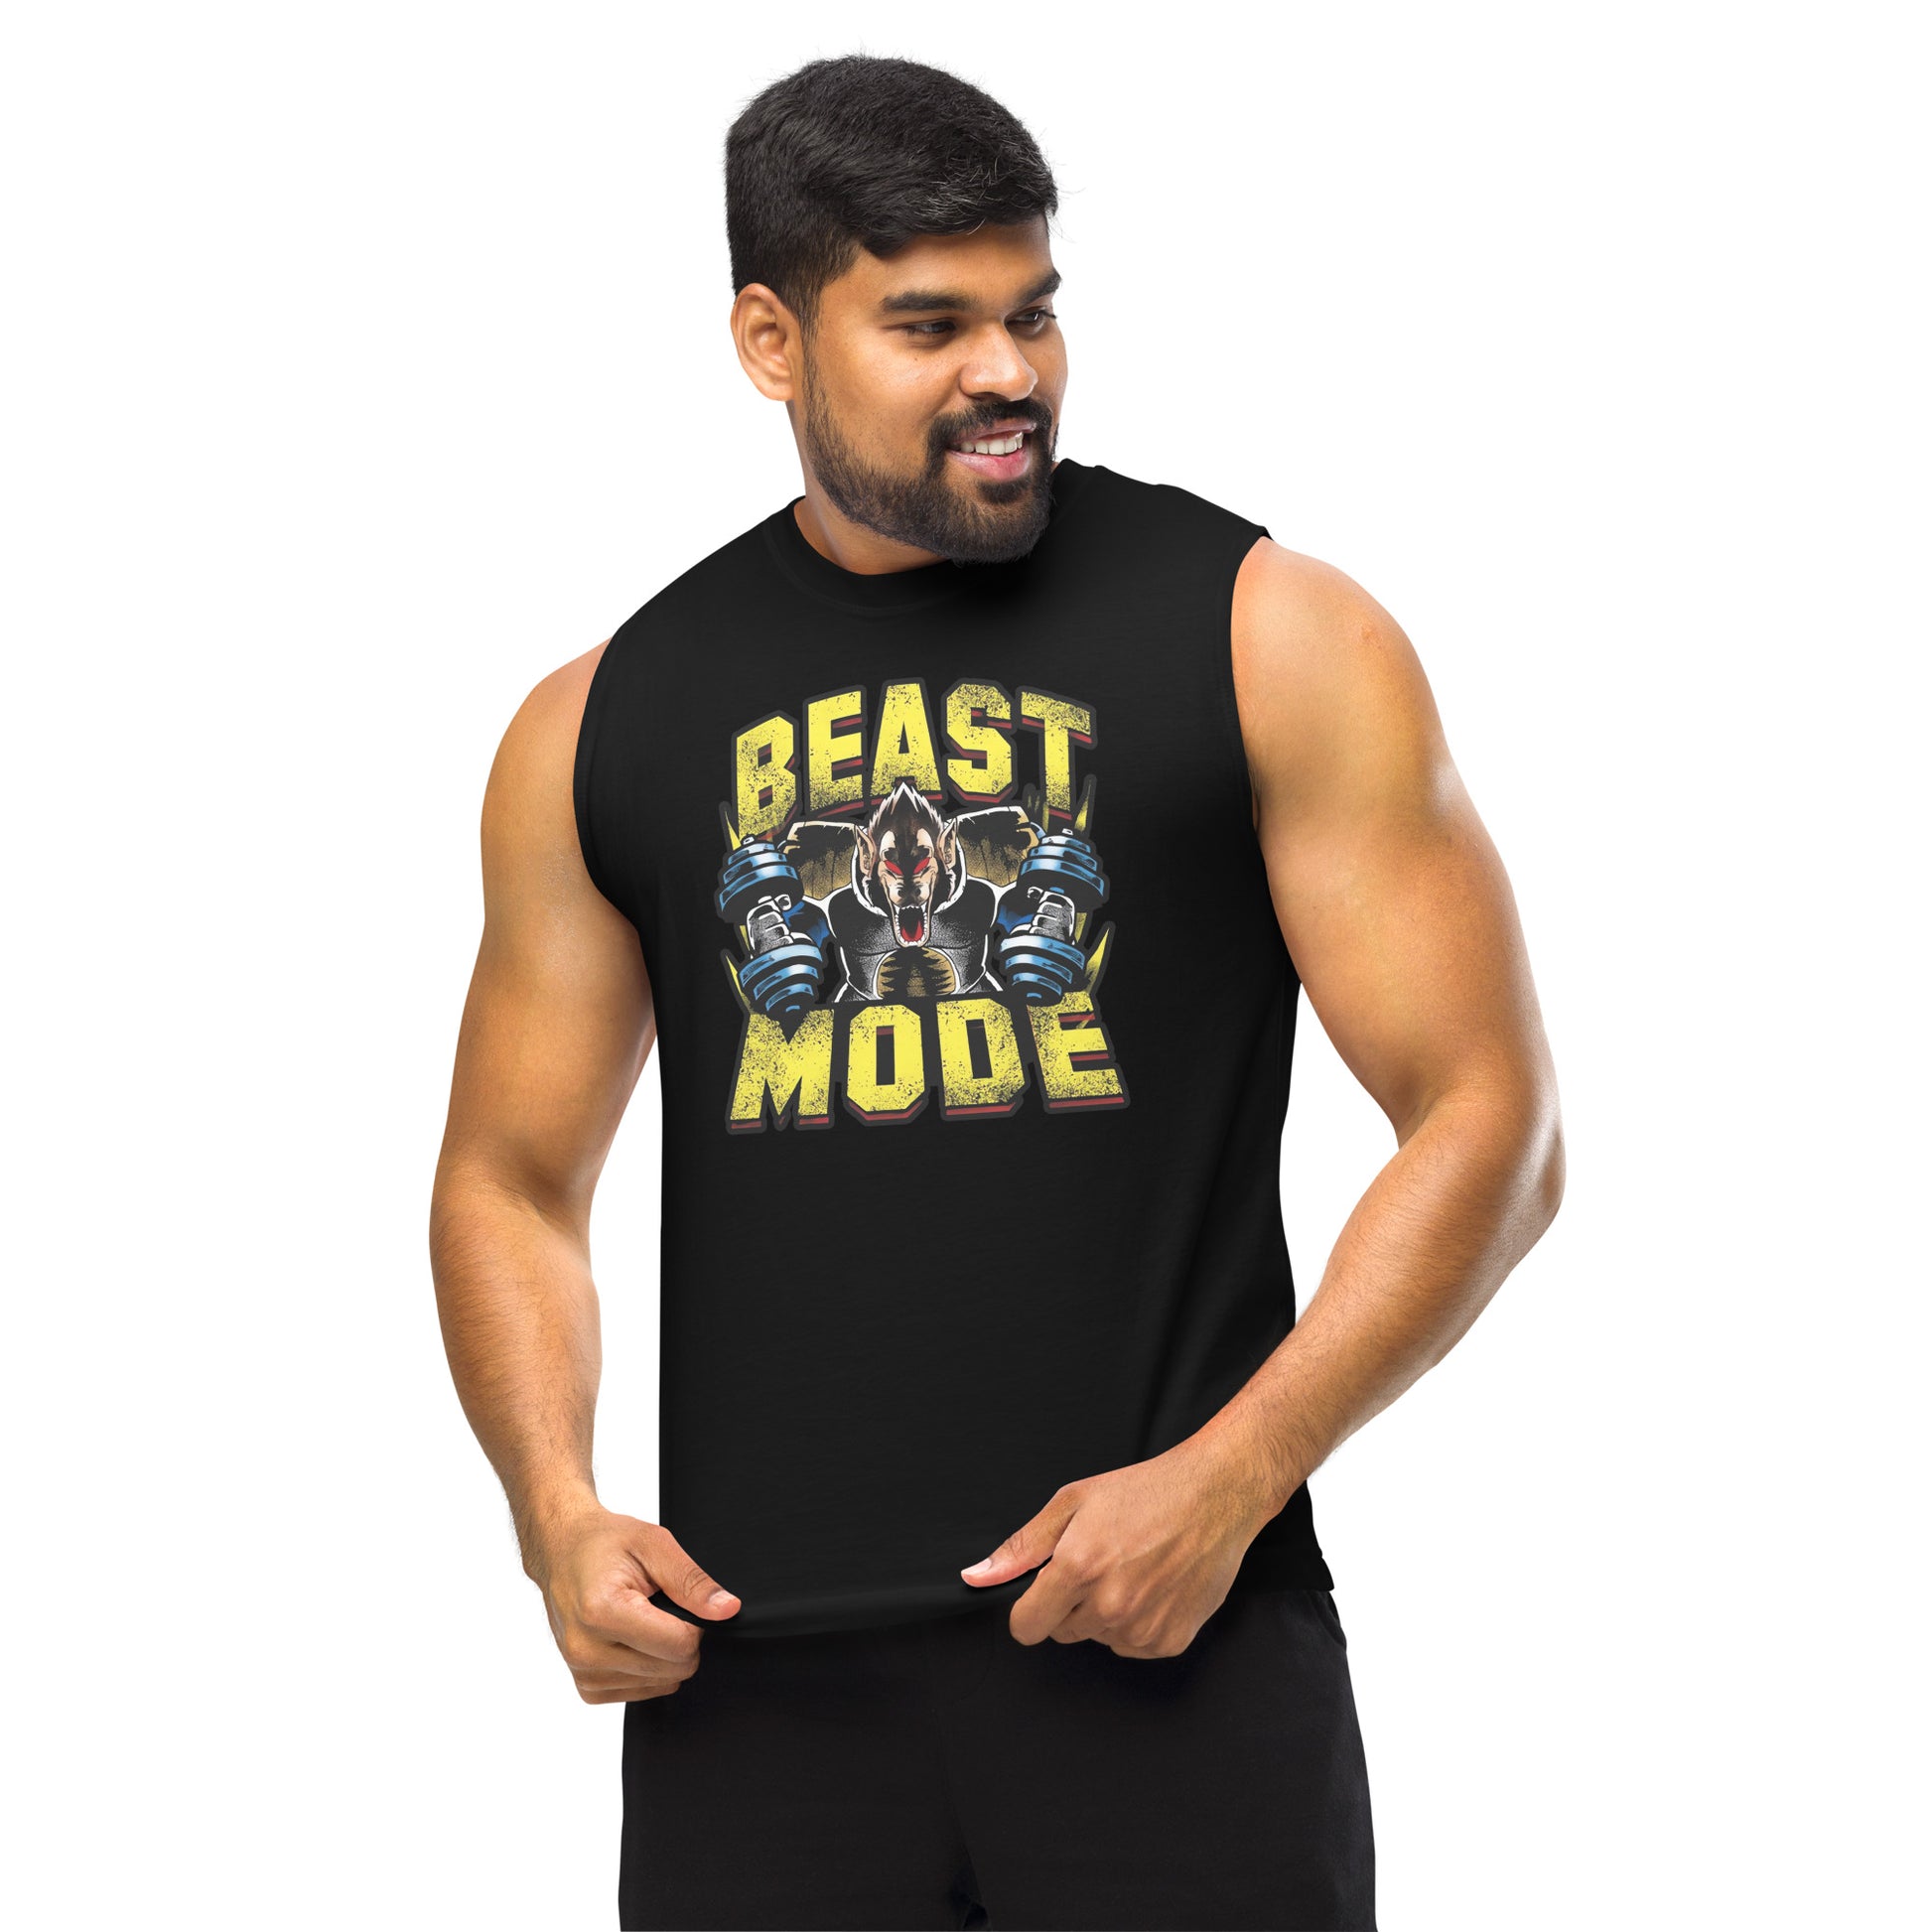 Camiseta sin mangas perfecta para entrenar, Camiseta Beast Mode Gym comprala en línea y experimenta el mejor servicio al cliente.